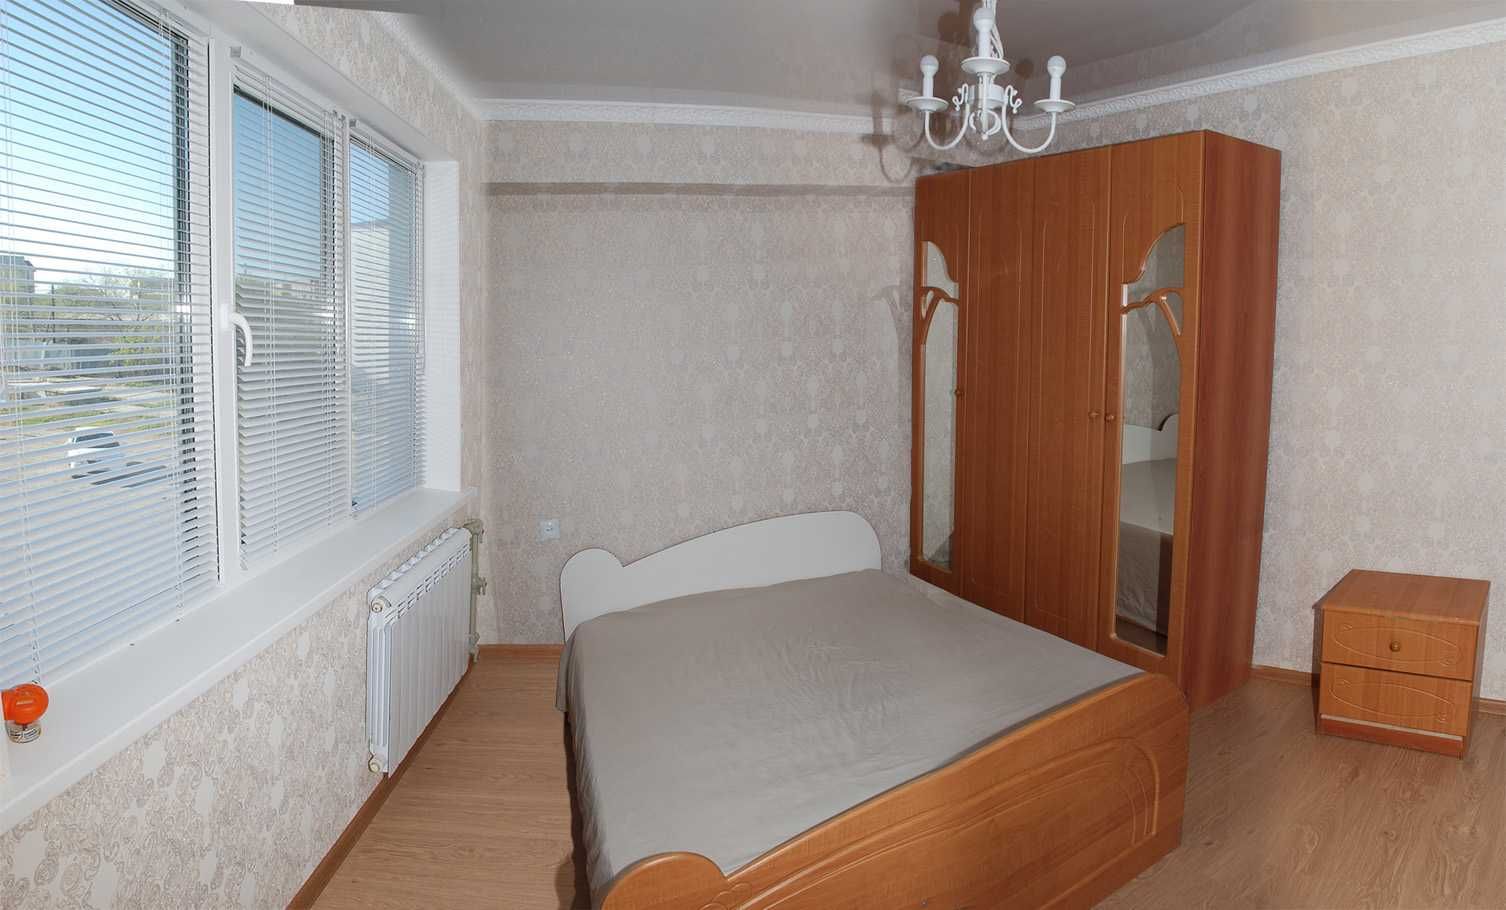 сдам 3-х комнатную квартиру в центре Атырау на долгий срок